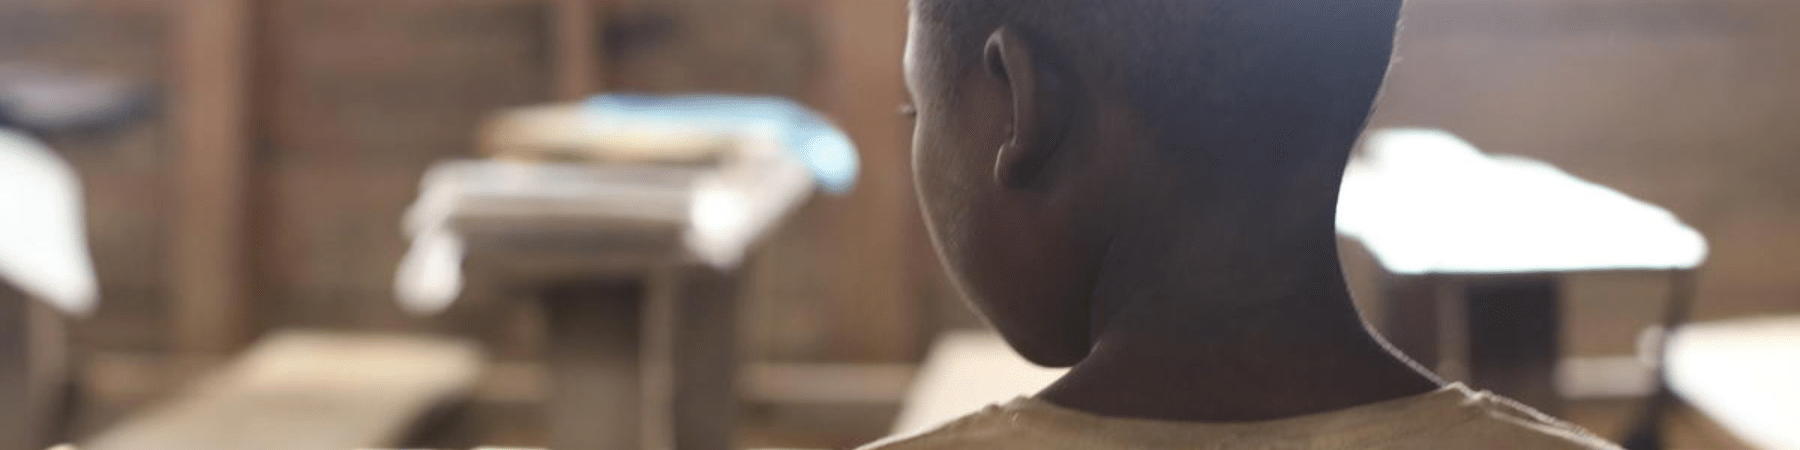 bambino della Repubblica Democratica del Congo in aula di scuola 